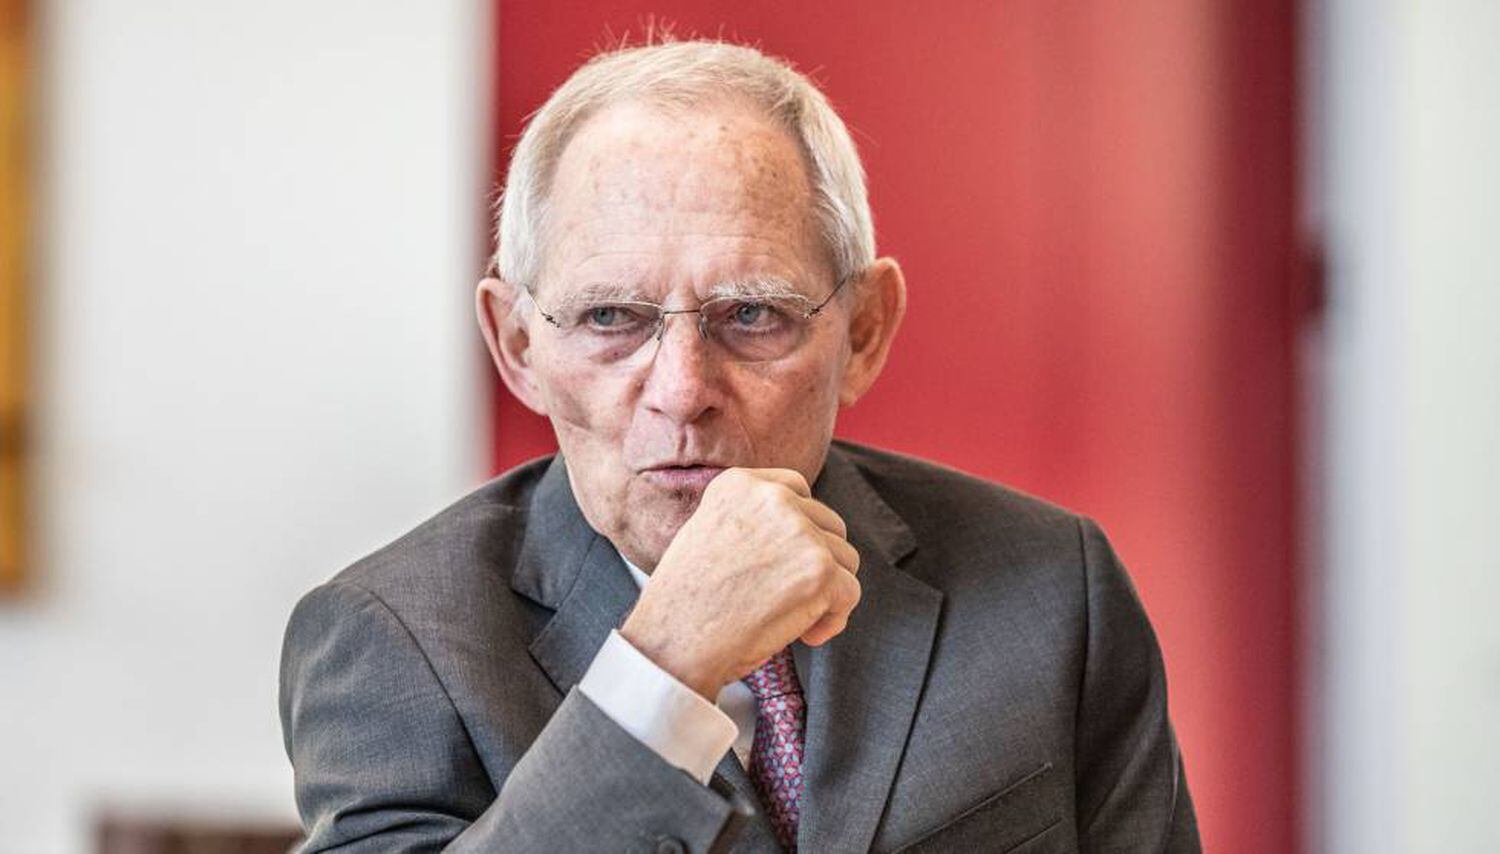 Wolfgang Schäuble, presidente del Bundestag alemán, durante una entrevista en su despacho el pasado febrero.